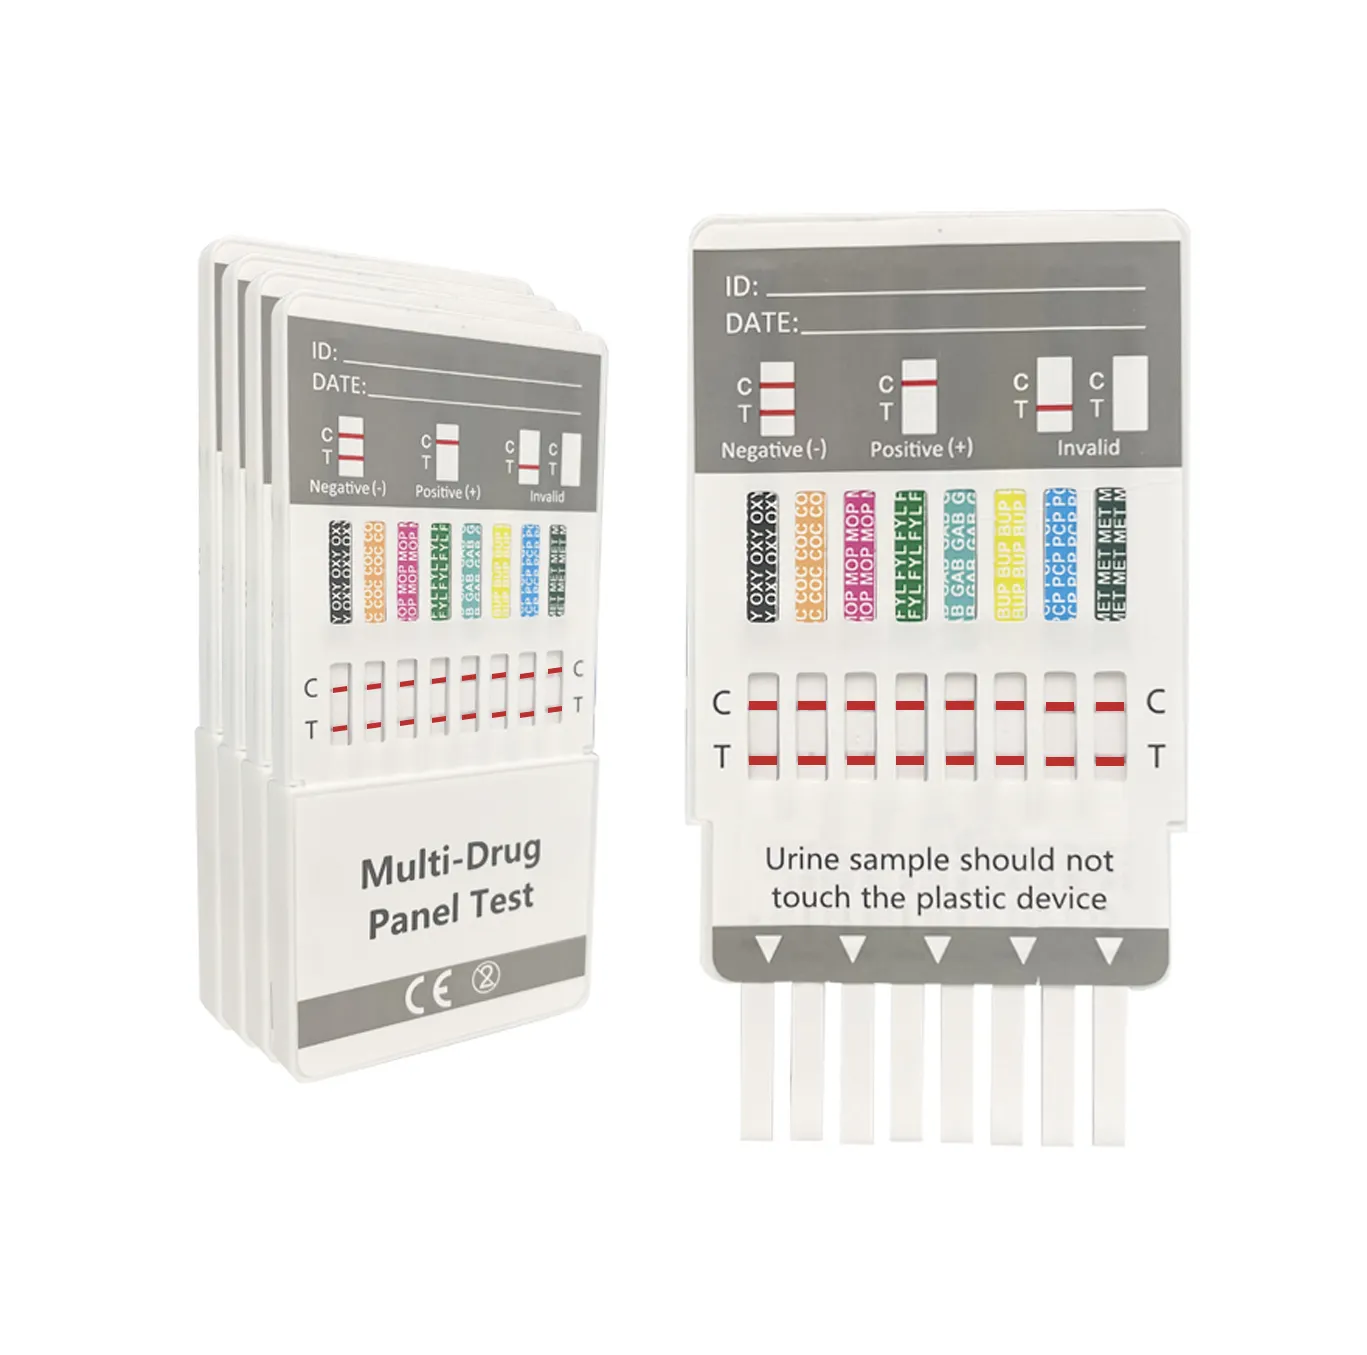 Kit de detección de drogas, 5 paneles, Multi anzuelo, prueba rápida de drogas